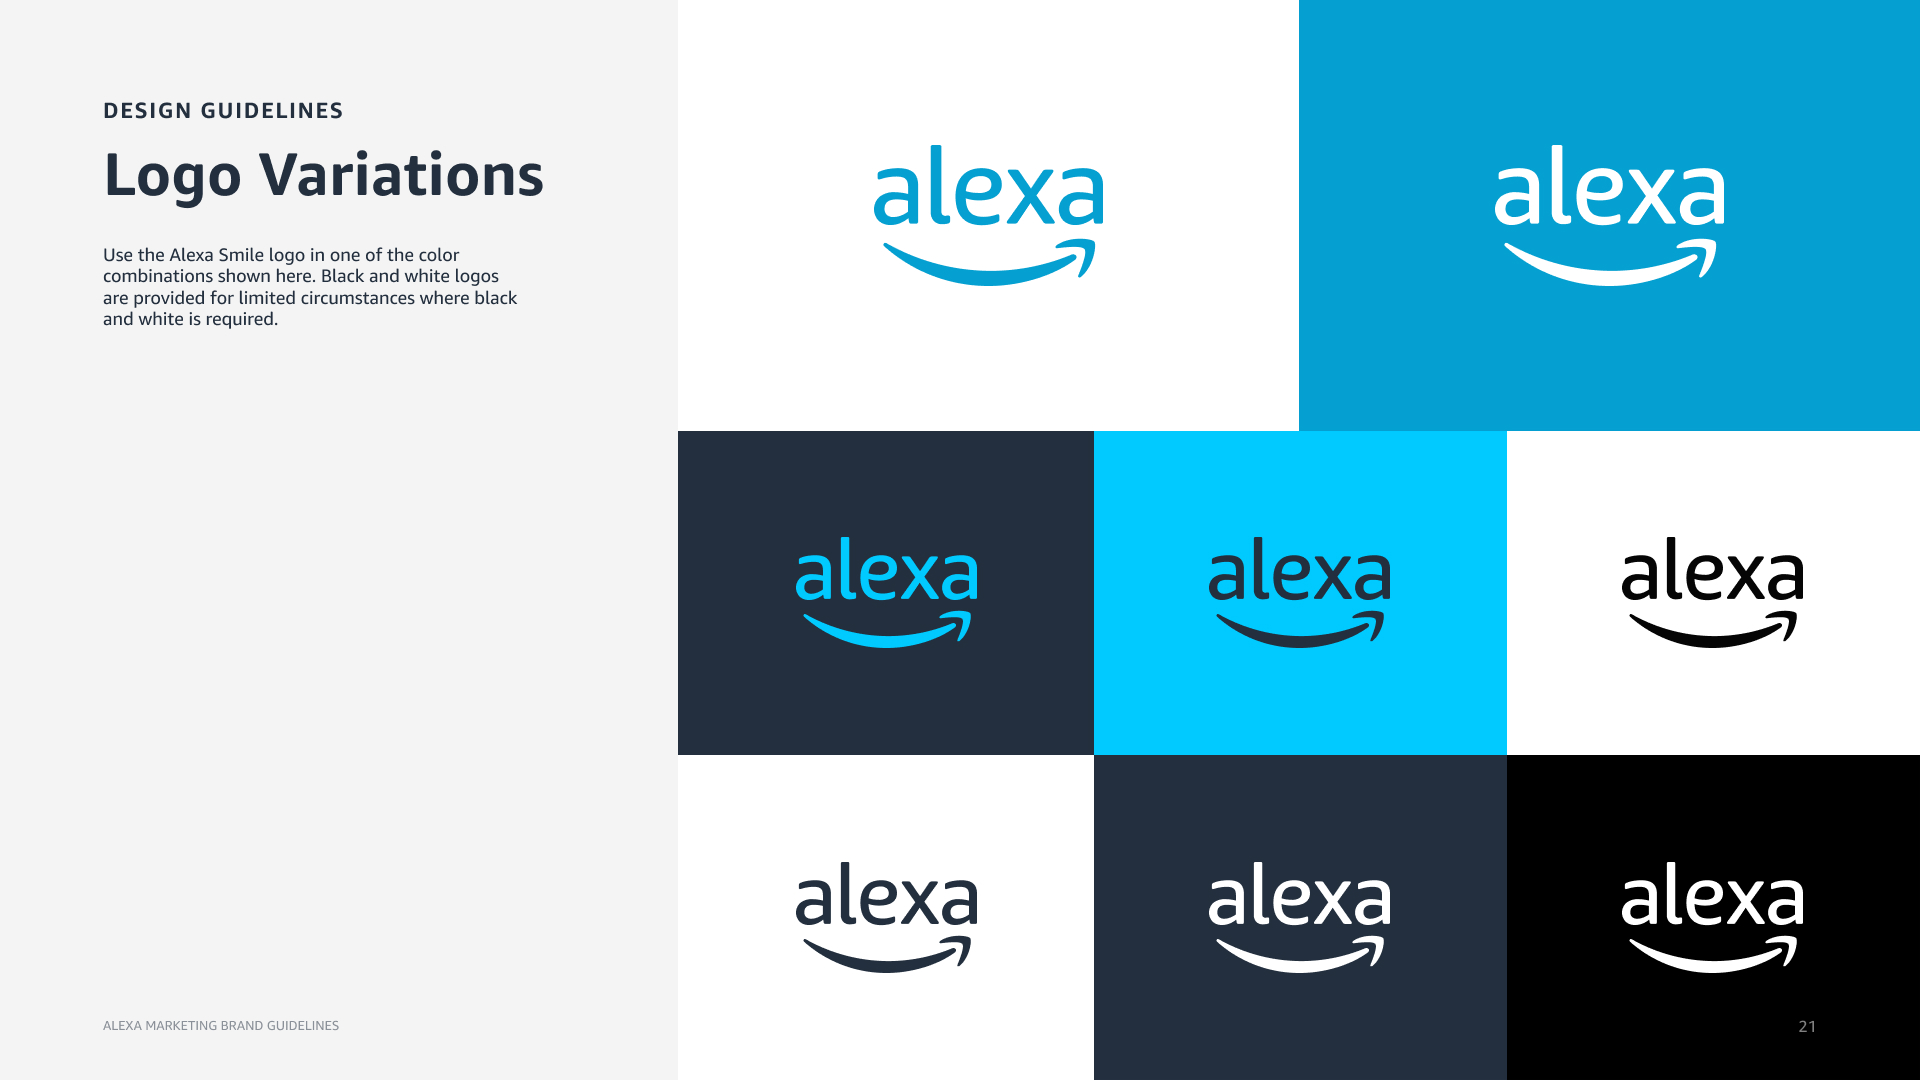 Alexa Fashion Logo Design, Alexa Fashion Logo Design